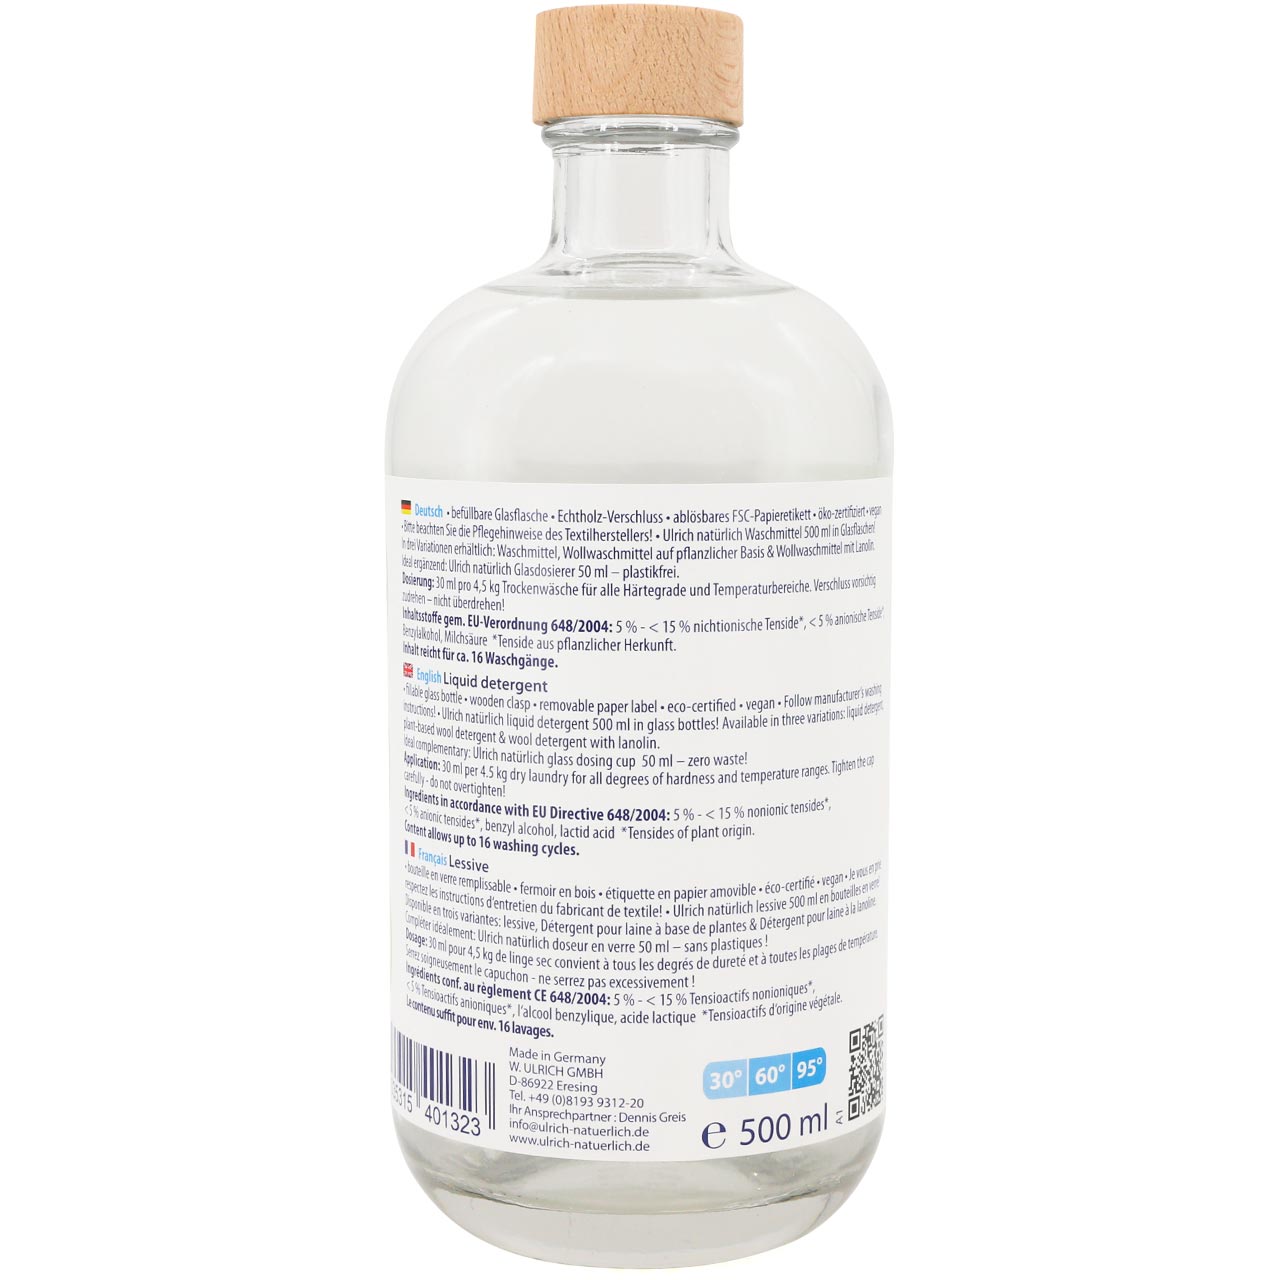 Waschmittel in wiederverwendbarer Glasflasche – 500 ml